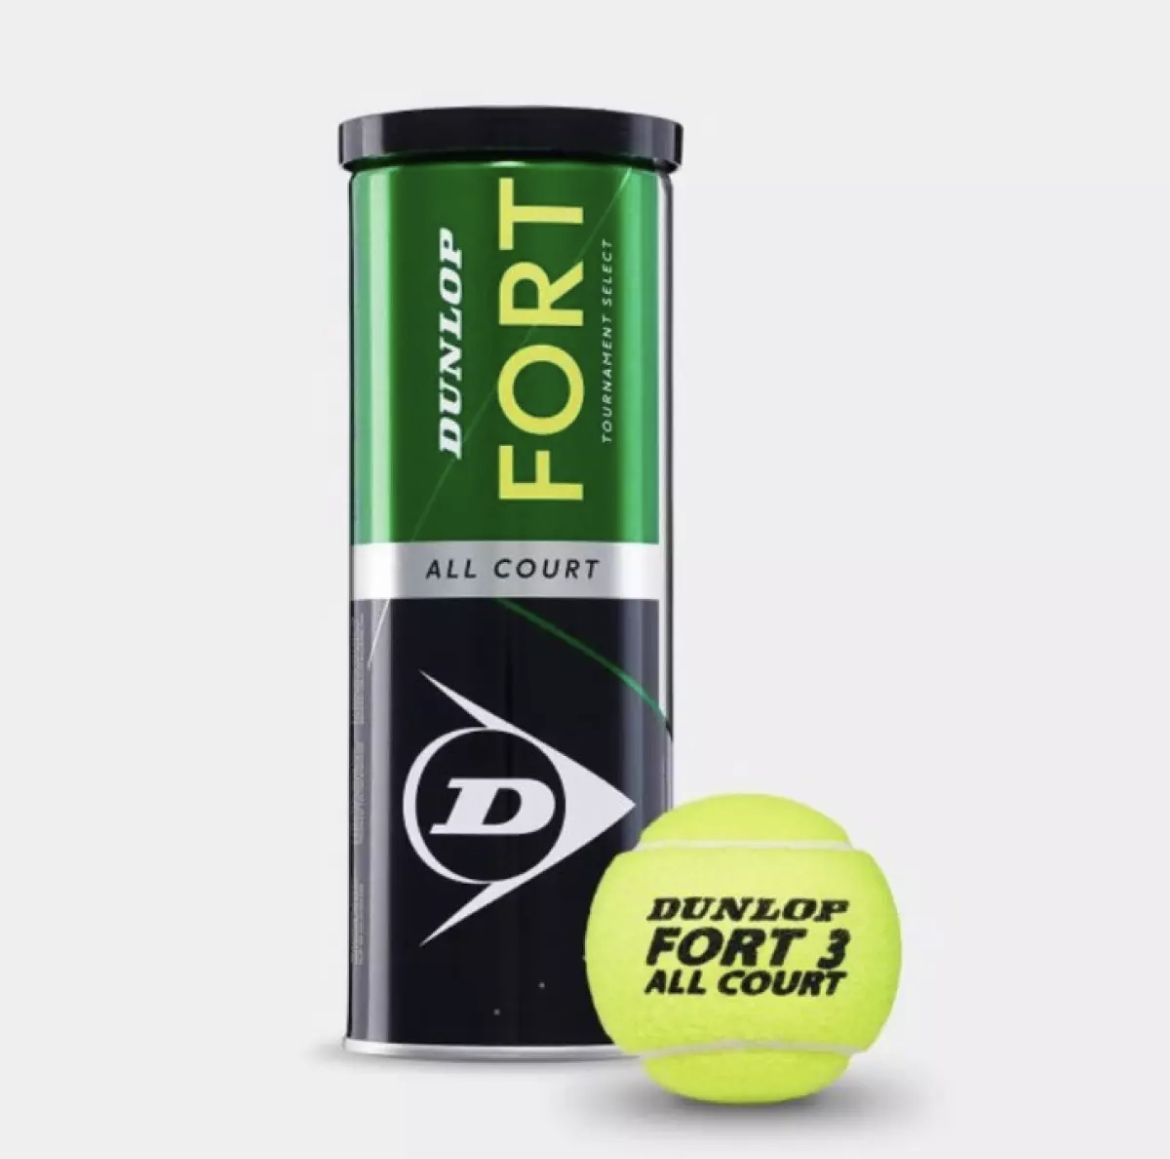 ลูกเทนนิส Dunlop Fort All court 1 can (3 balls) New Standard  ขนหนานุ่ม สปีด สปินได้ดี ใช้ได้นาน มาตราฐานแข่งขัน  รับประกันคุณภาพ